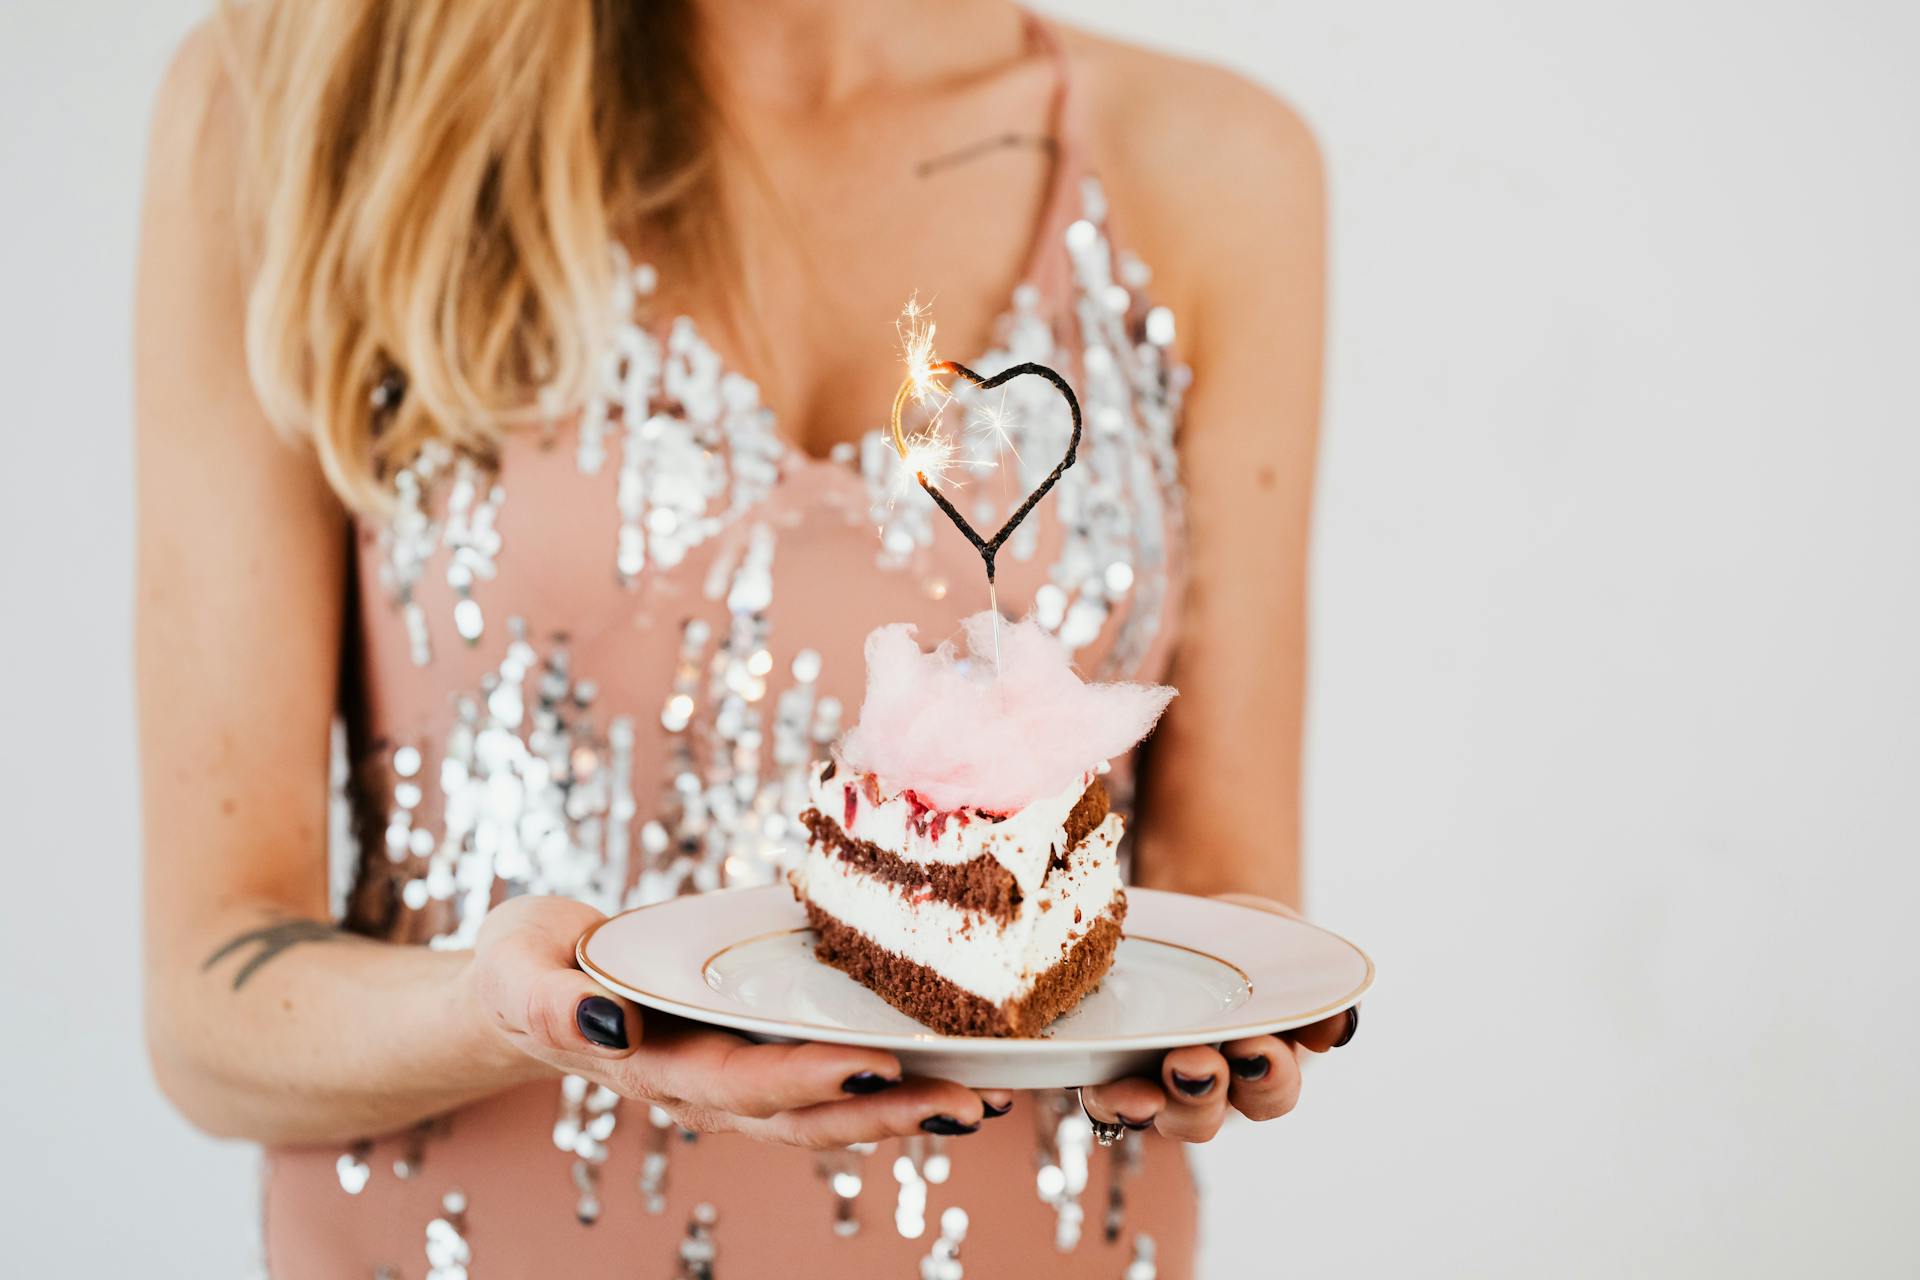 Eine Frau hält eine Torte | Quelle: Pexels